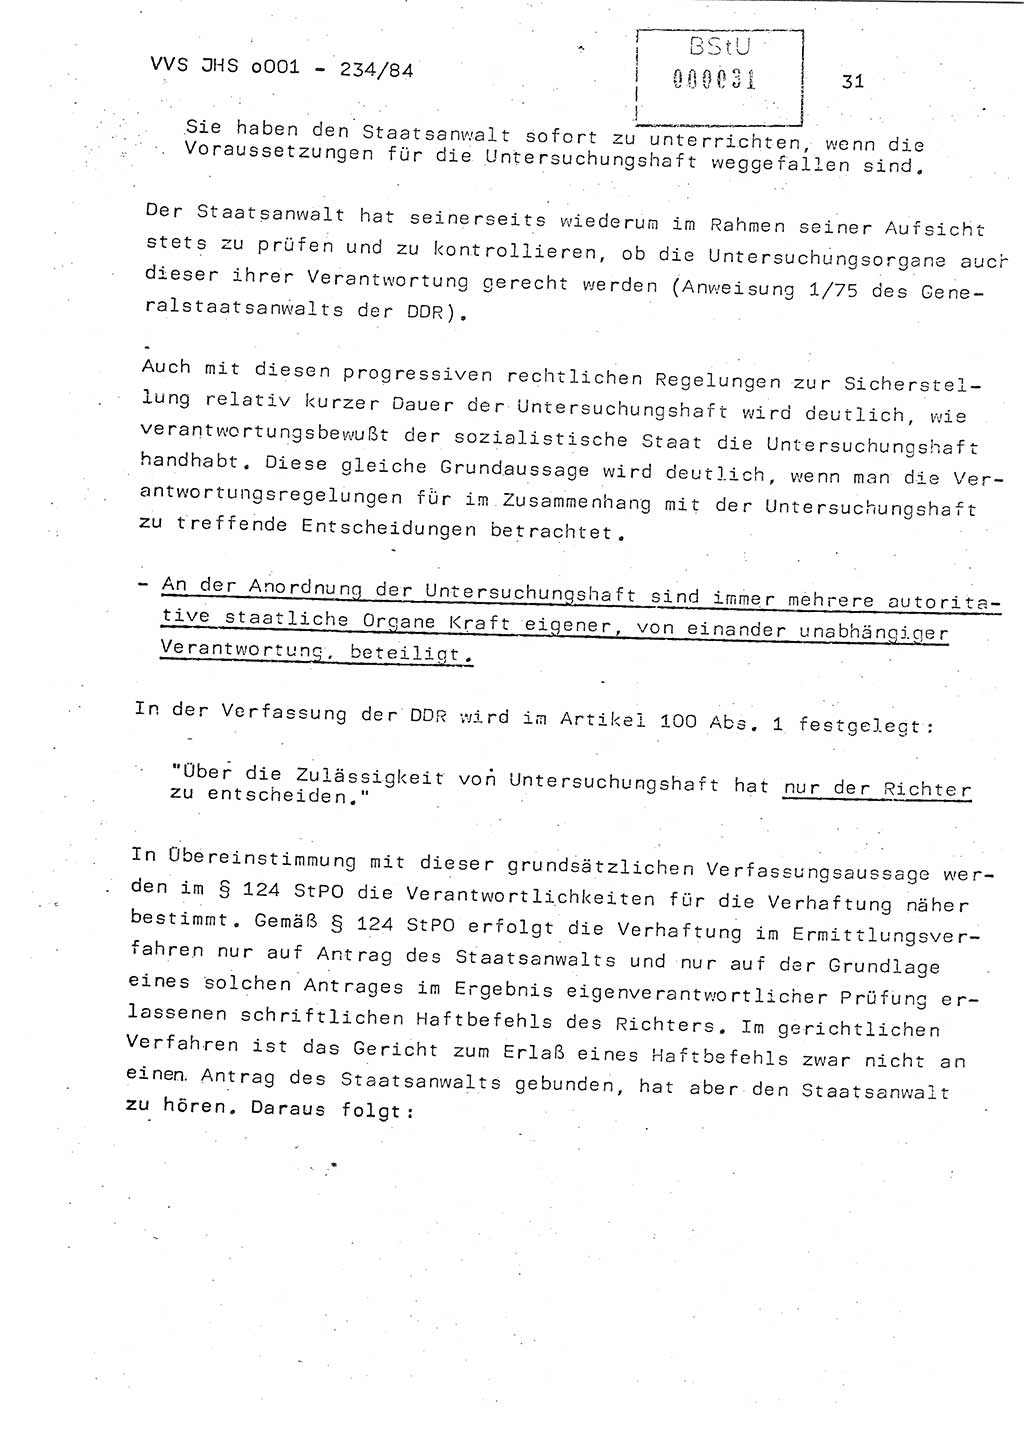 Dissertation Oberst Siegfried Rataizick (Abt. ⅩⅣ), Oberstleutnant Volkmar Heinz (Abt. ⅩⅣ), Oberstleutnant Werner Stein (HA Ⅸ), Hauptmann Heinz Conrad (JHS), Ministerium für Staatssicherheit (MfS) [Deutsche Demokratische Republik (DDR)], Juristische Hochschule (JHS), Vertrauliche Verschlußsache (VVS) o001-234/84, Potsdam 1984, Seite 31 (Diss. MfS DDR JHS VVS o001-234/84 1984, S. 31)